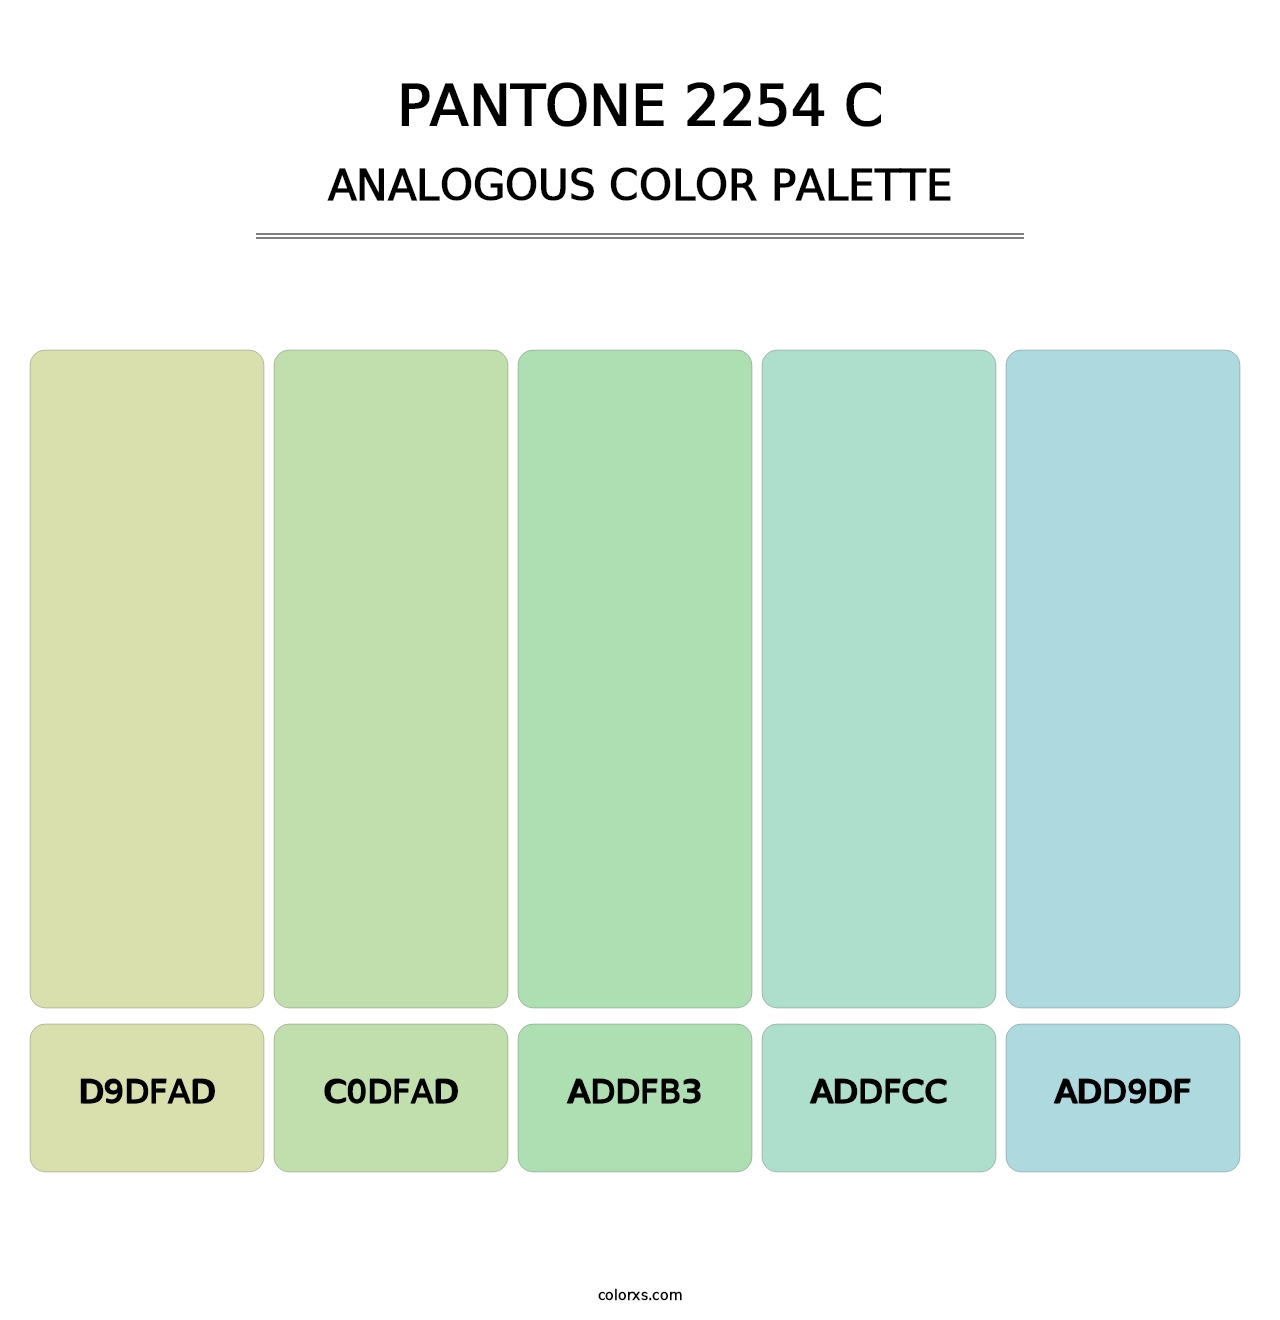 PANTONE 2254 C - Analogous Color Palette